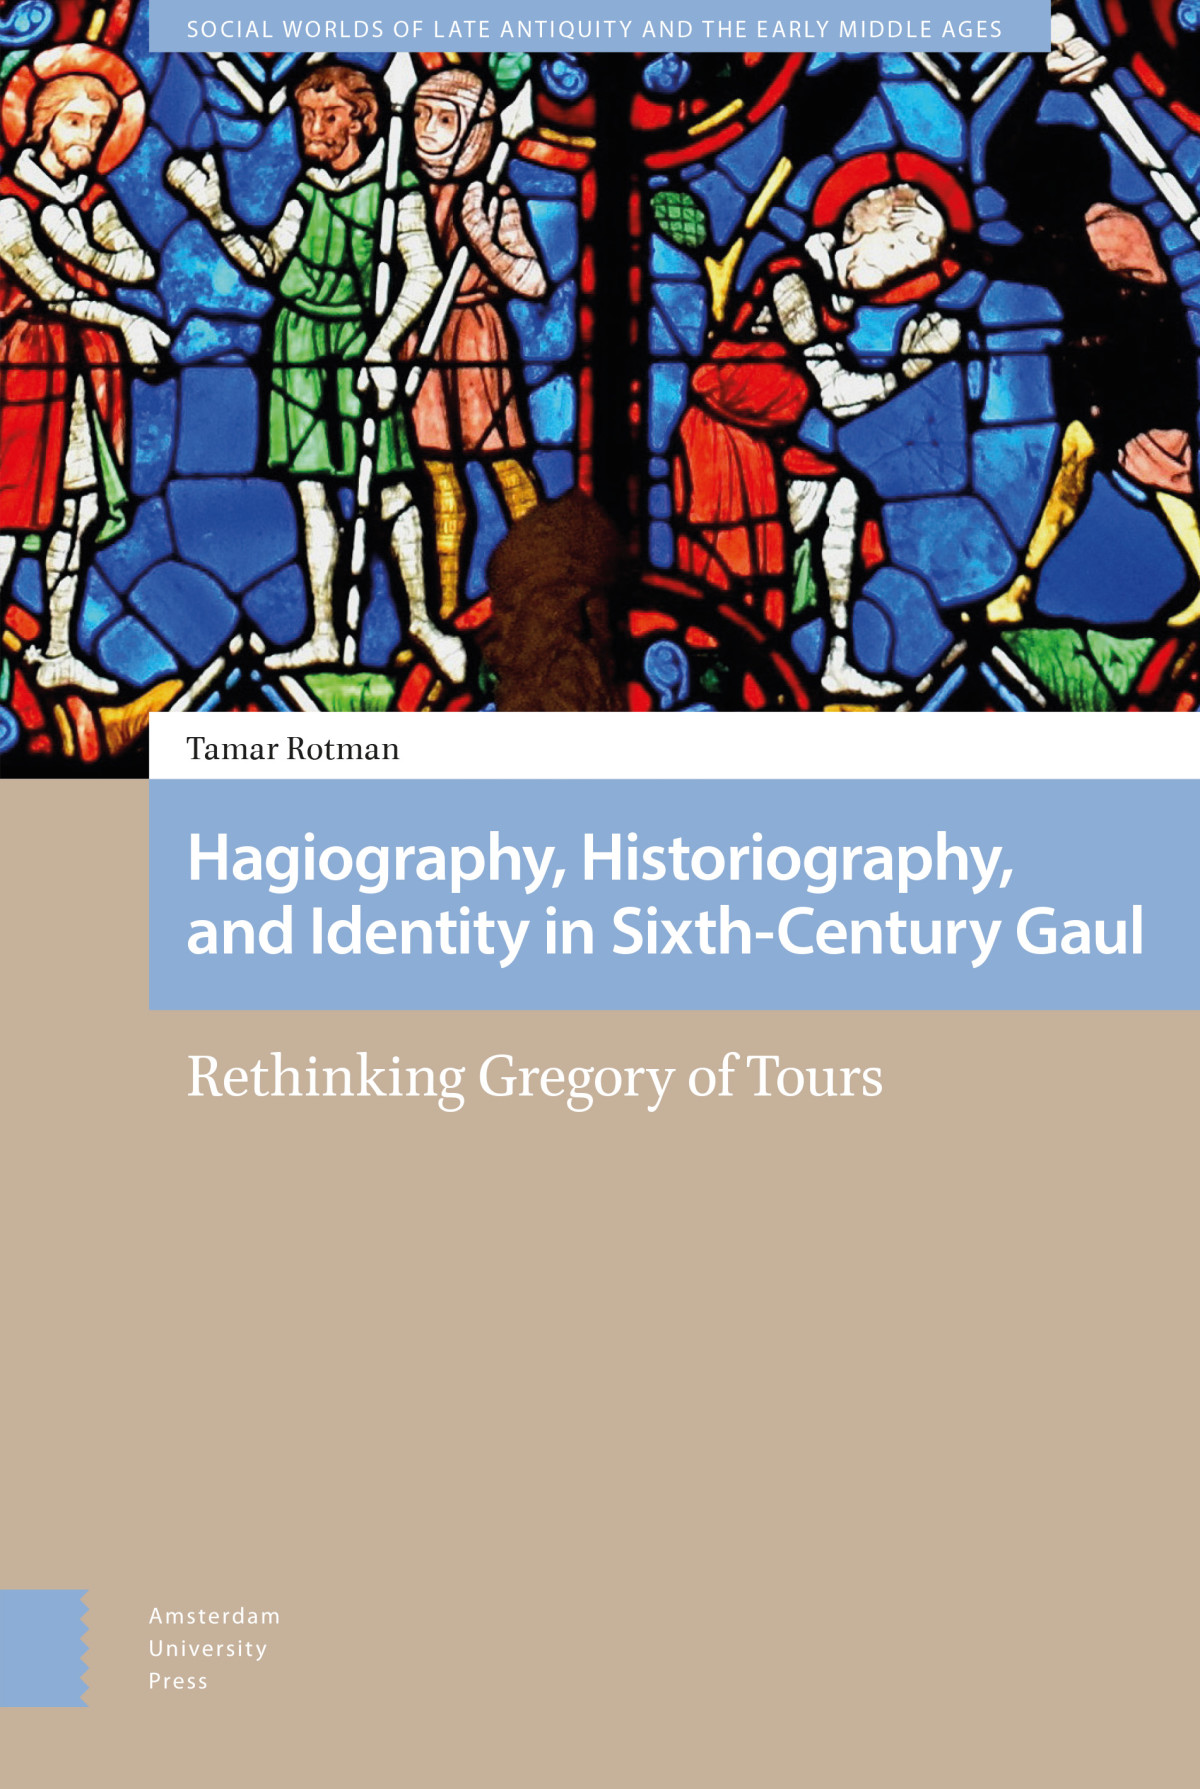 define biography hagiography